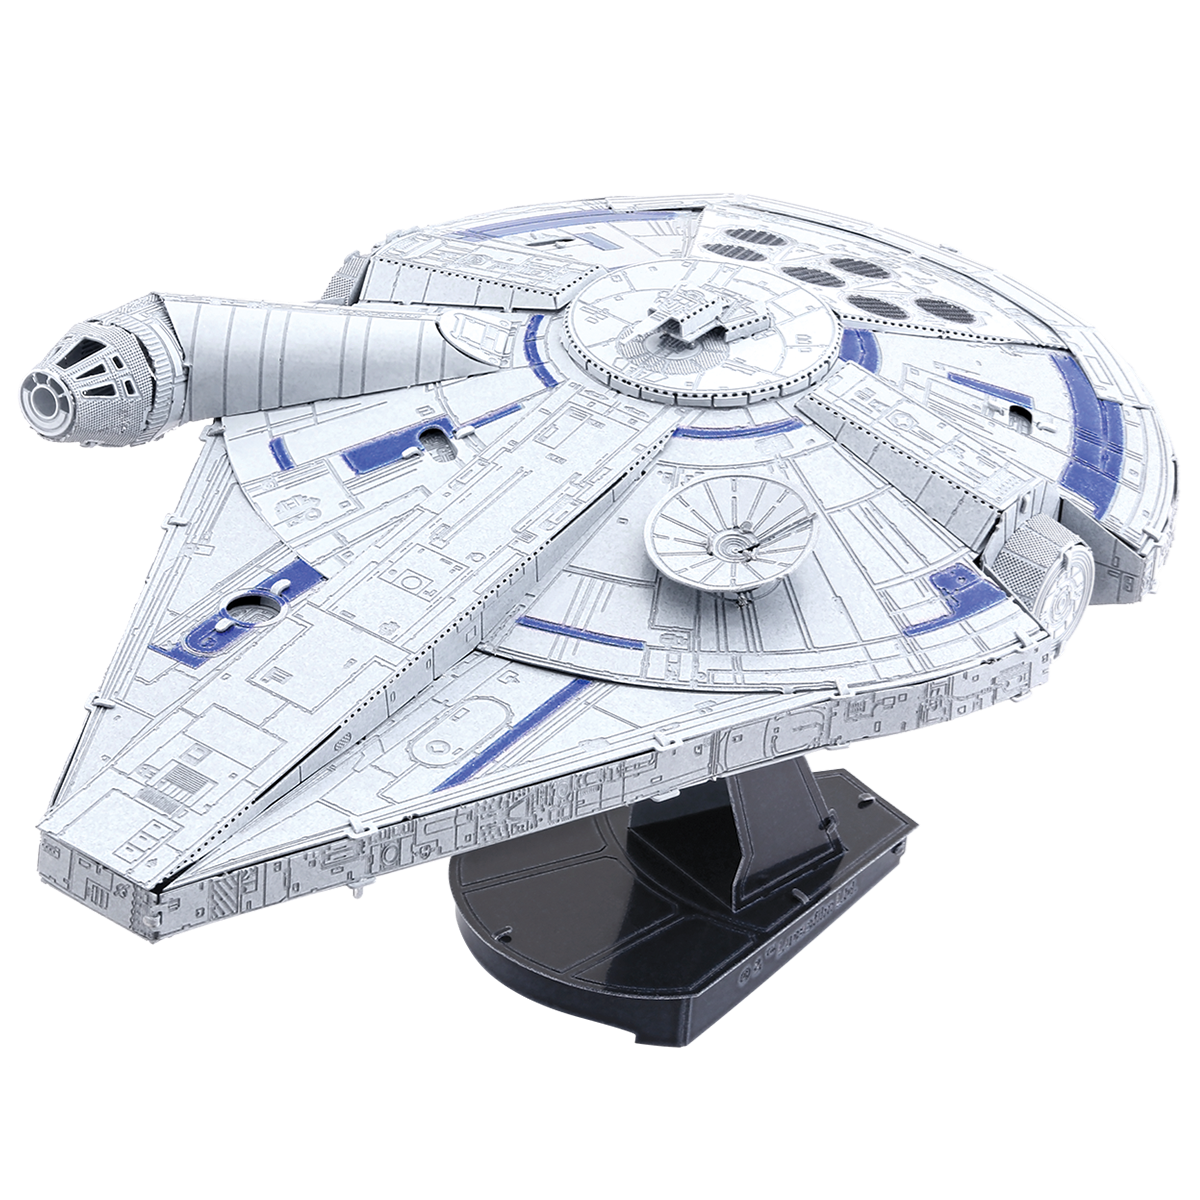 トップシークレット Metal Earth 3D Model Kits Star Wars Set of Millennium  Falcon X(品)